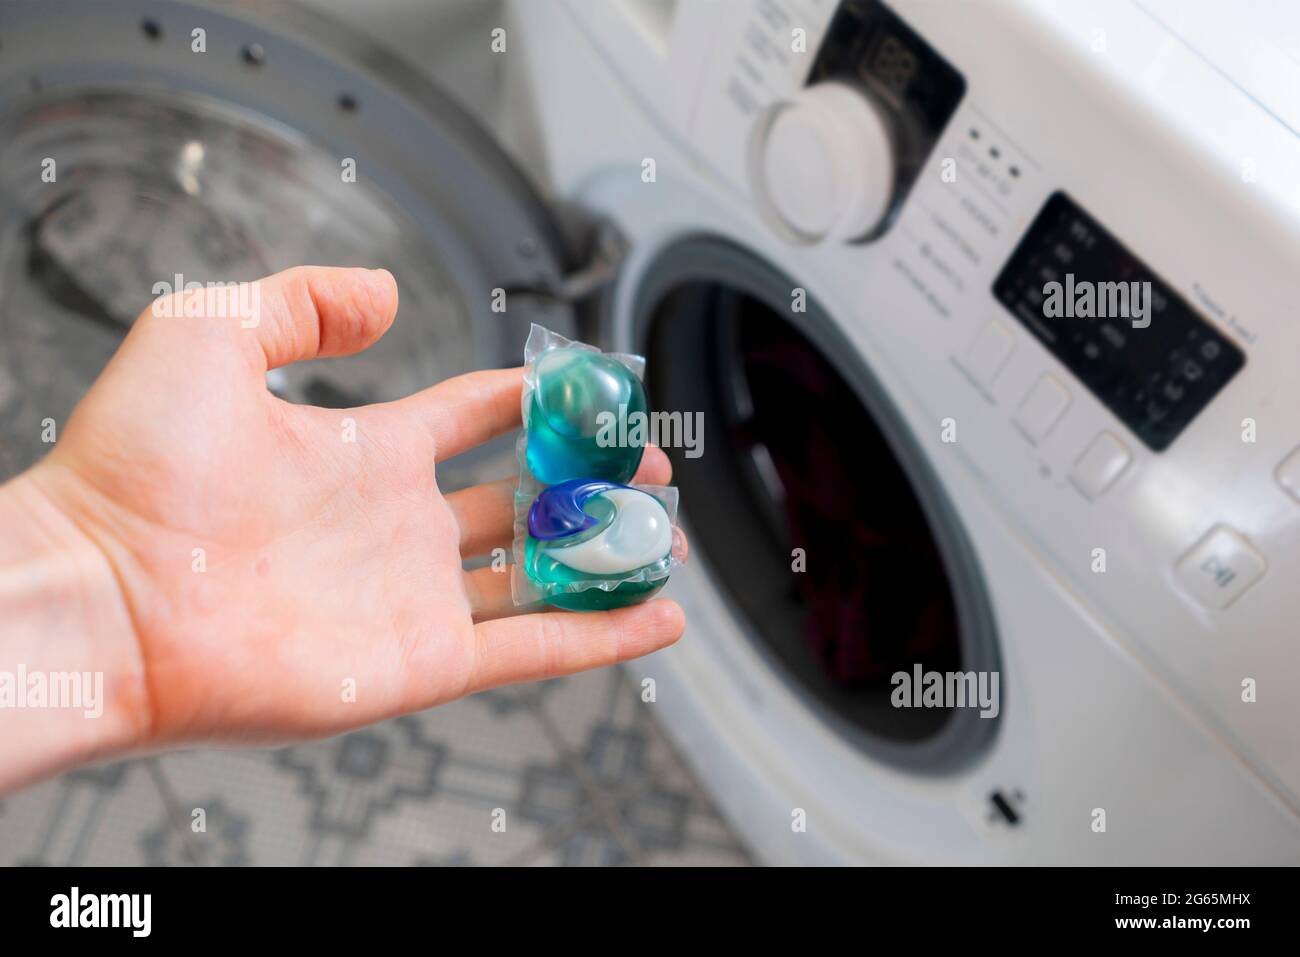 Personen legen spezielle Reinigungskapseln oder -Kapseln mit schmutziger  Kleidung in die Waschmaschine Stockfotografie - Alamy